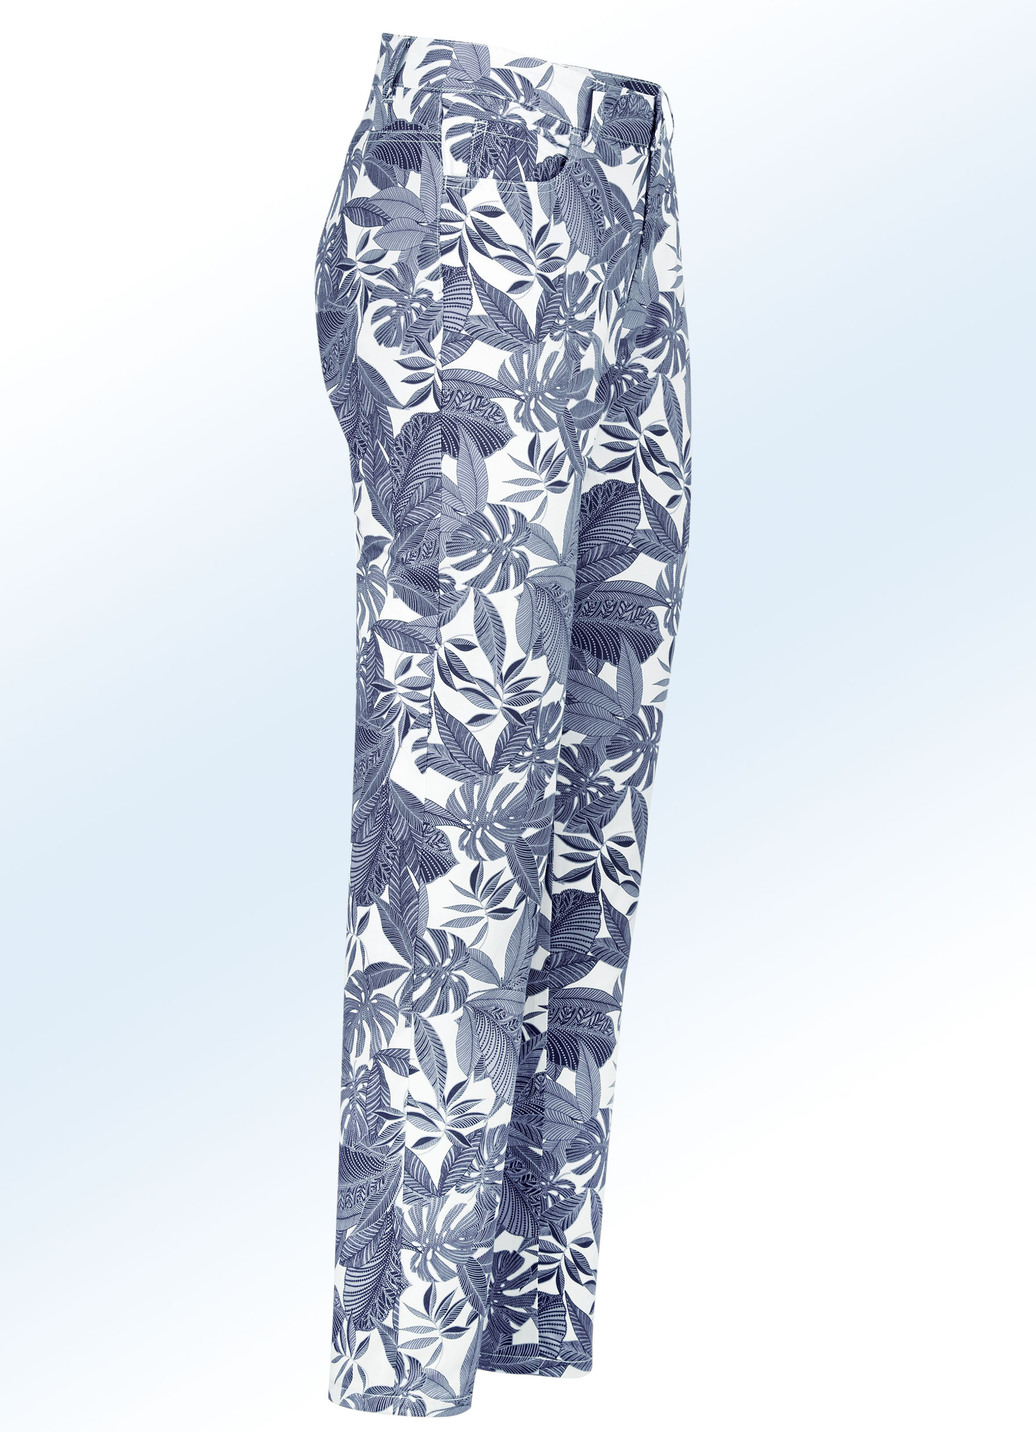 Hose in trendiger Blätter-Dessinierung, Jeansblau-Weiss, Größe 50 von BADER